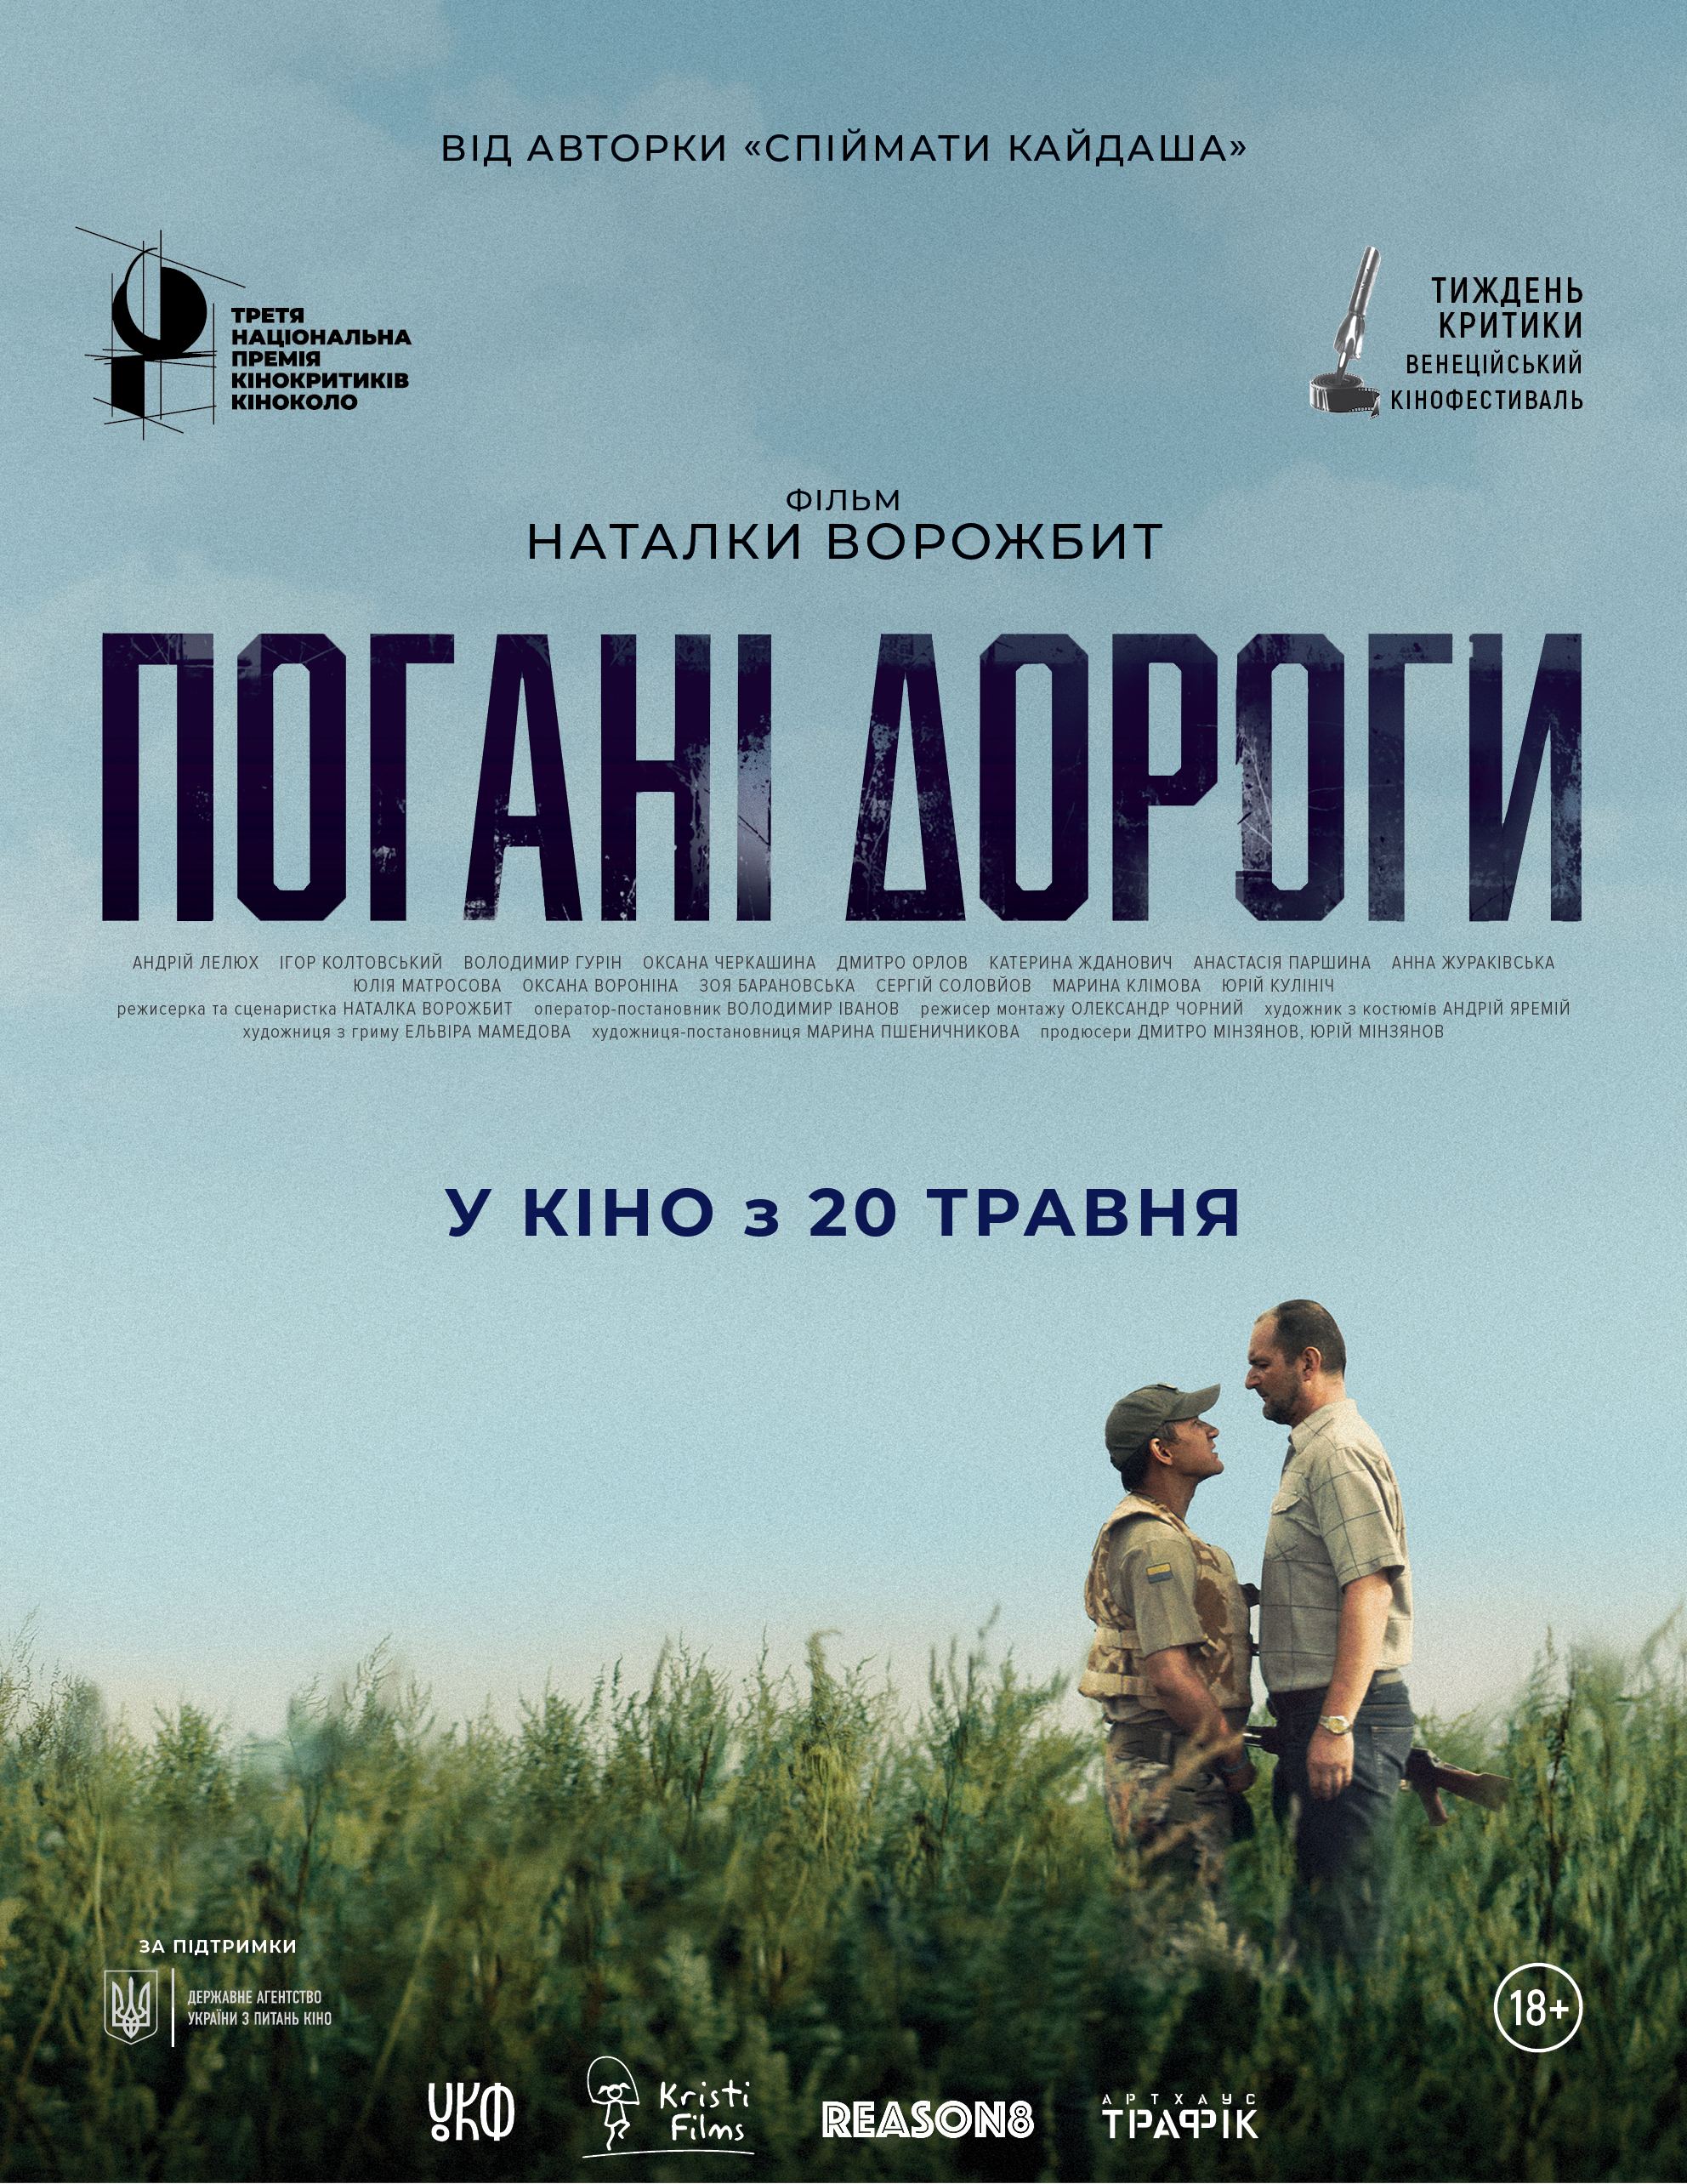 «Оскар-2022». Український оскарівський комітет визначився з учасниками національного відбору на кінопремію